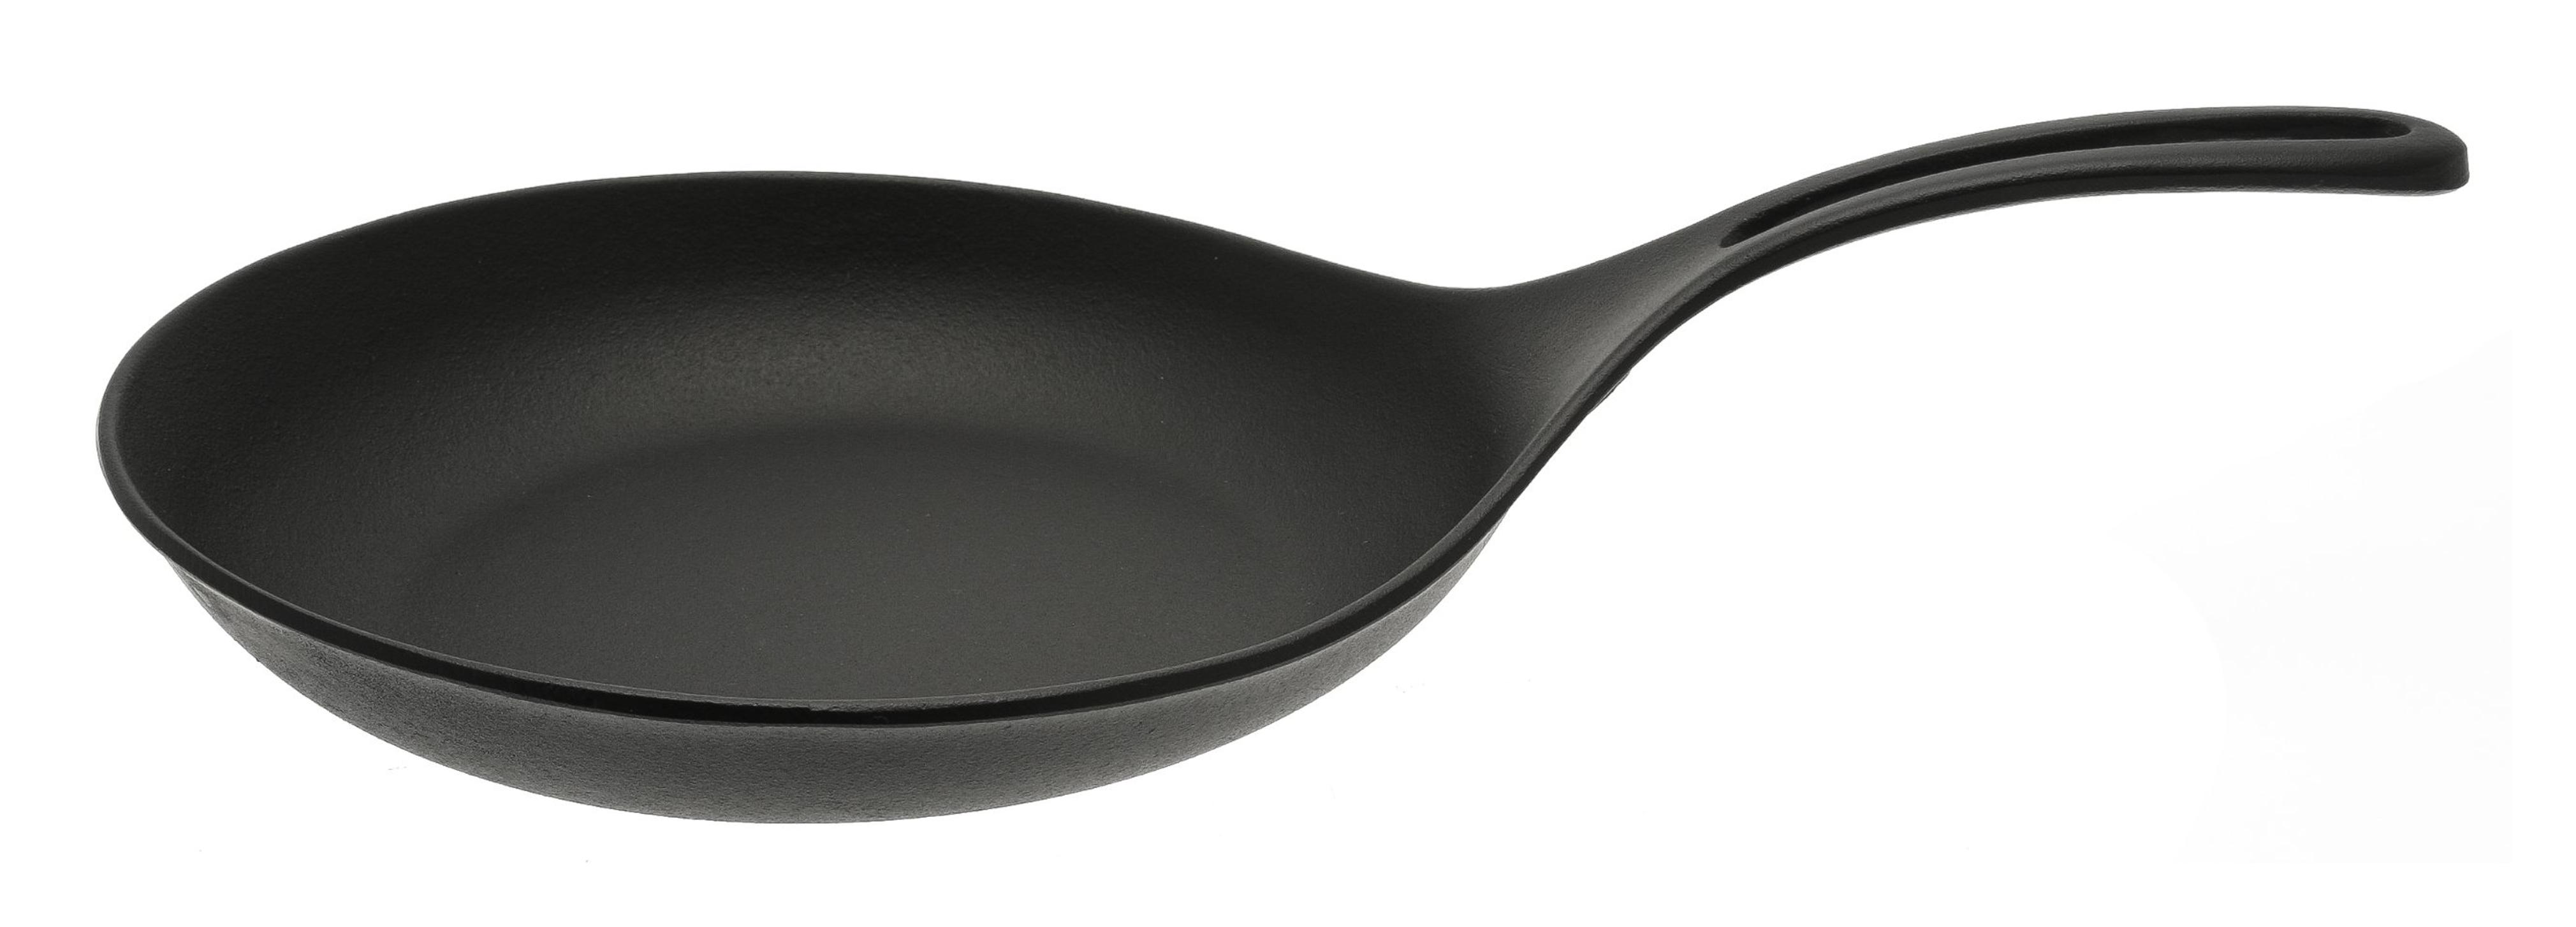 Iwachu 410-556 Iron Omelette Pan, Large